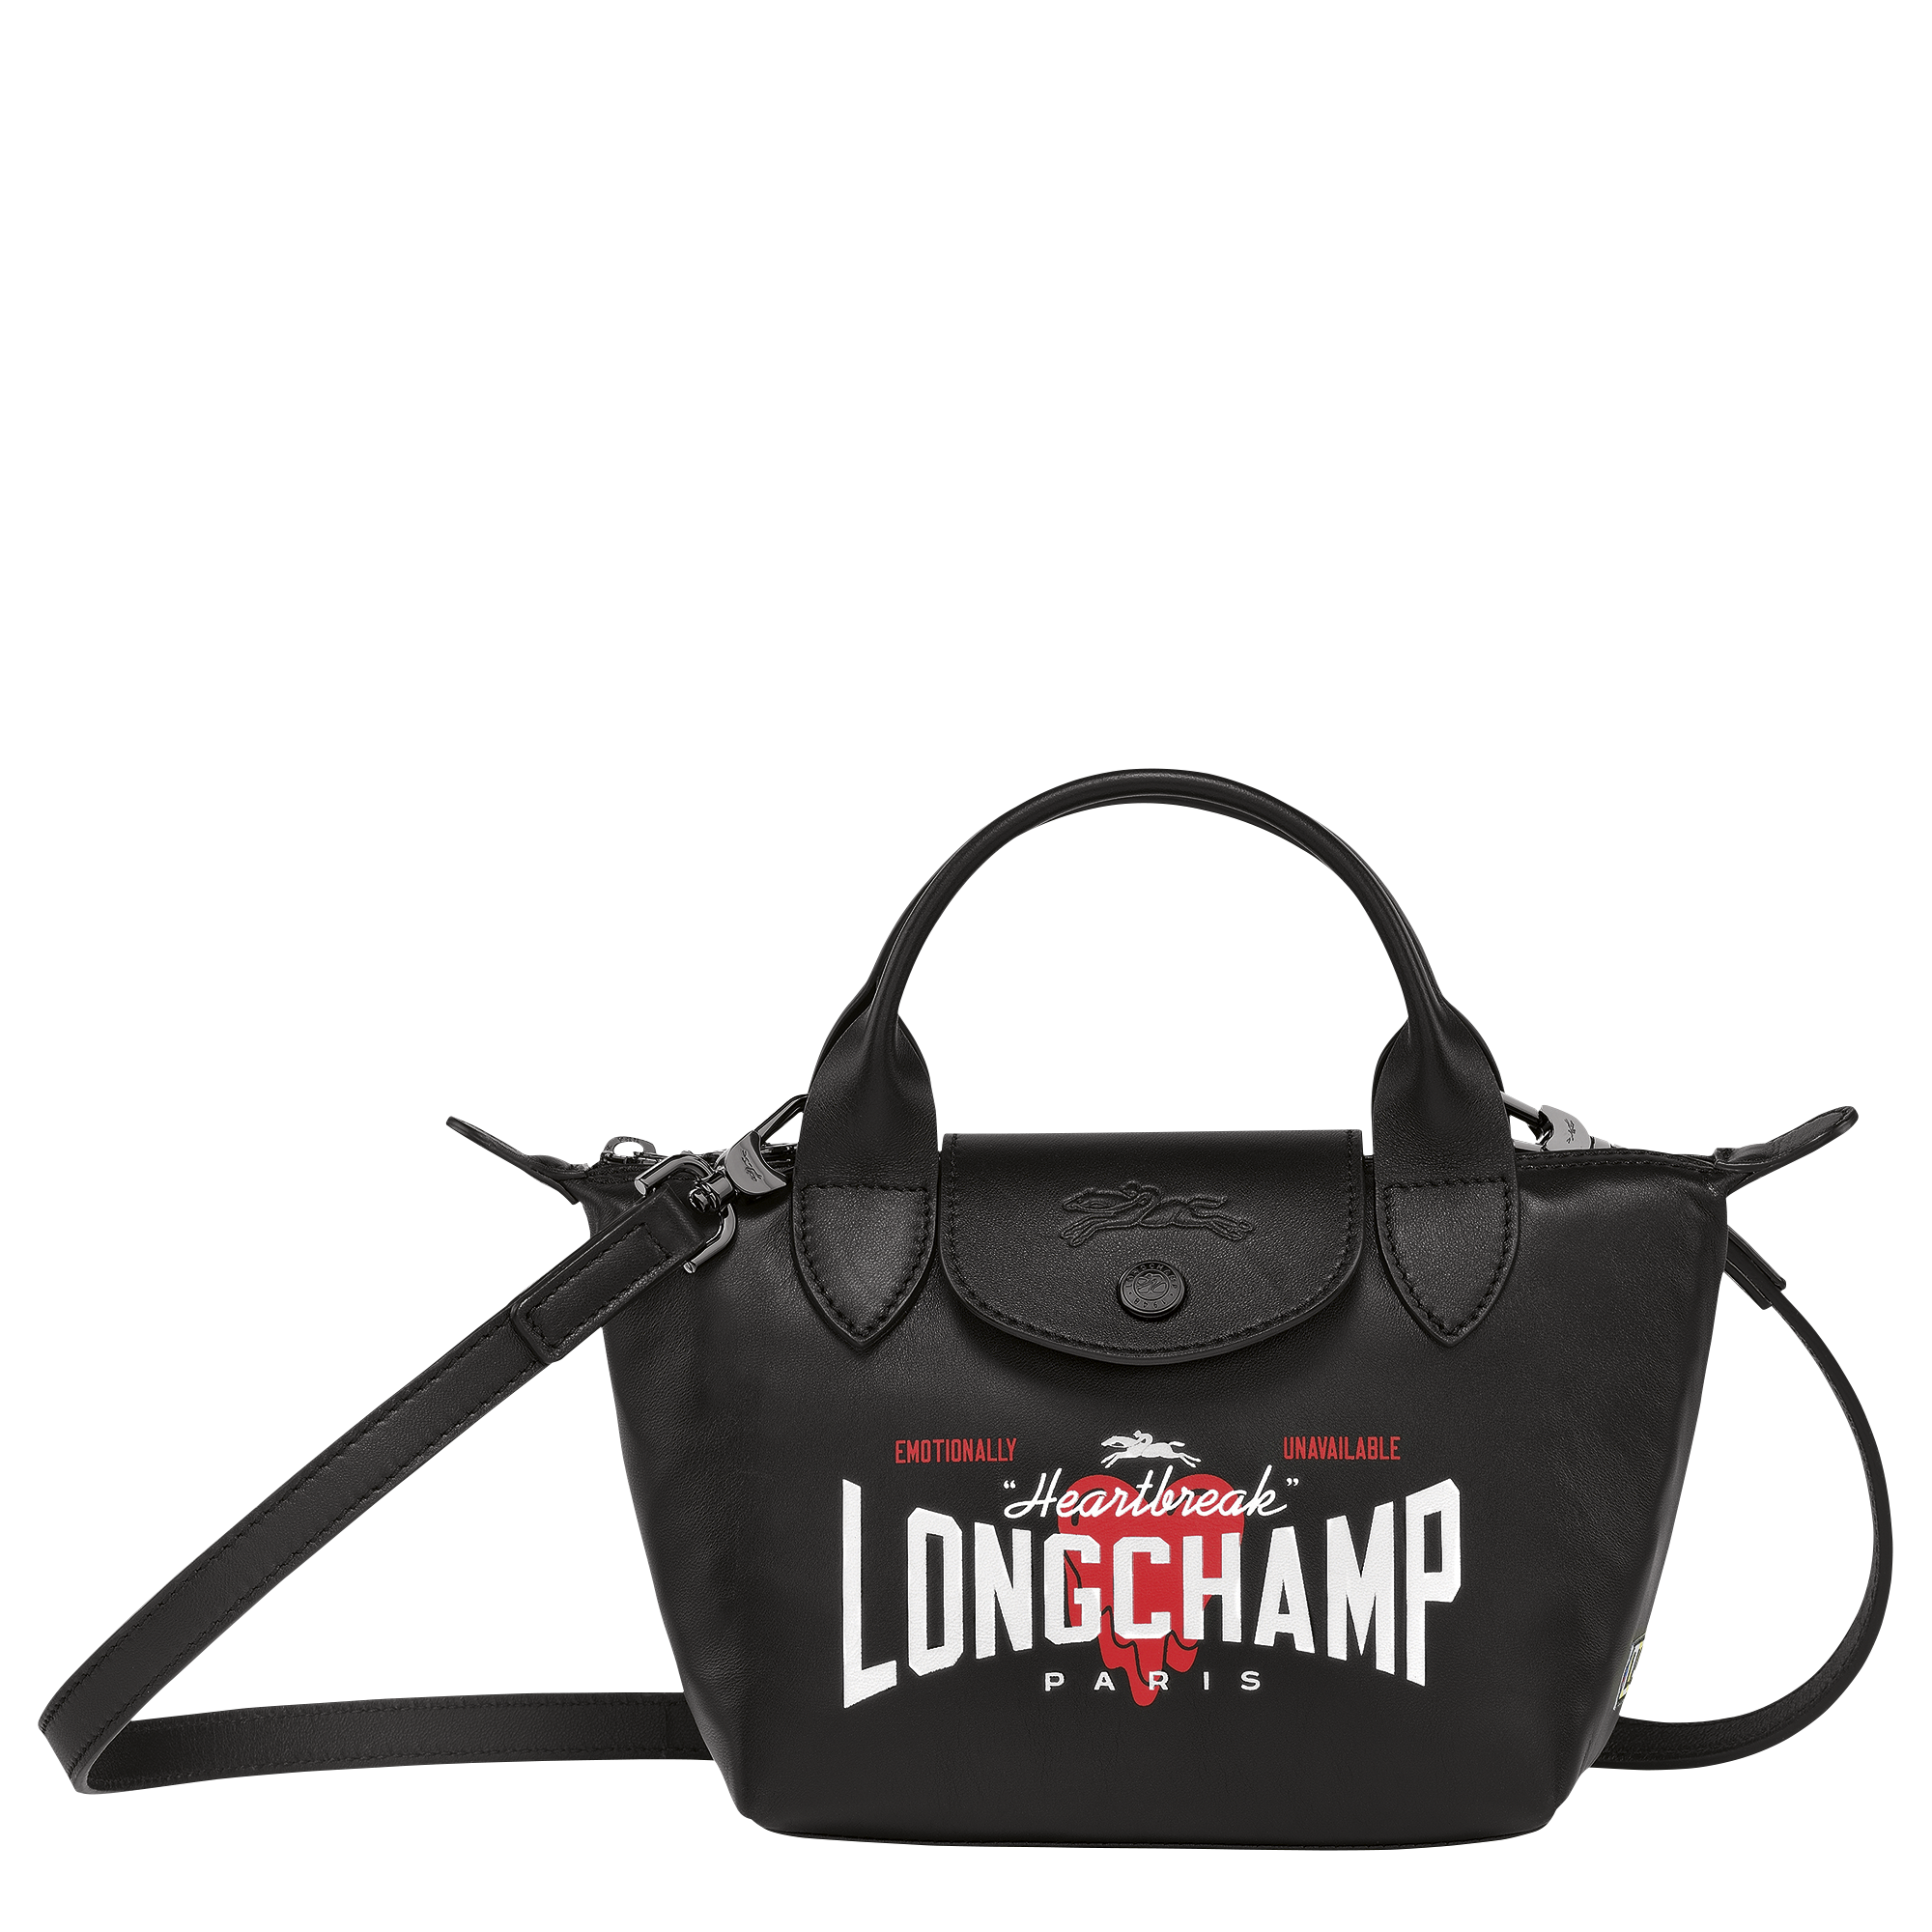 EU x Longchamp - Tophandle Bag (XS)